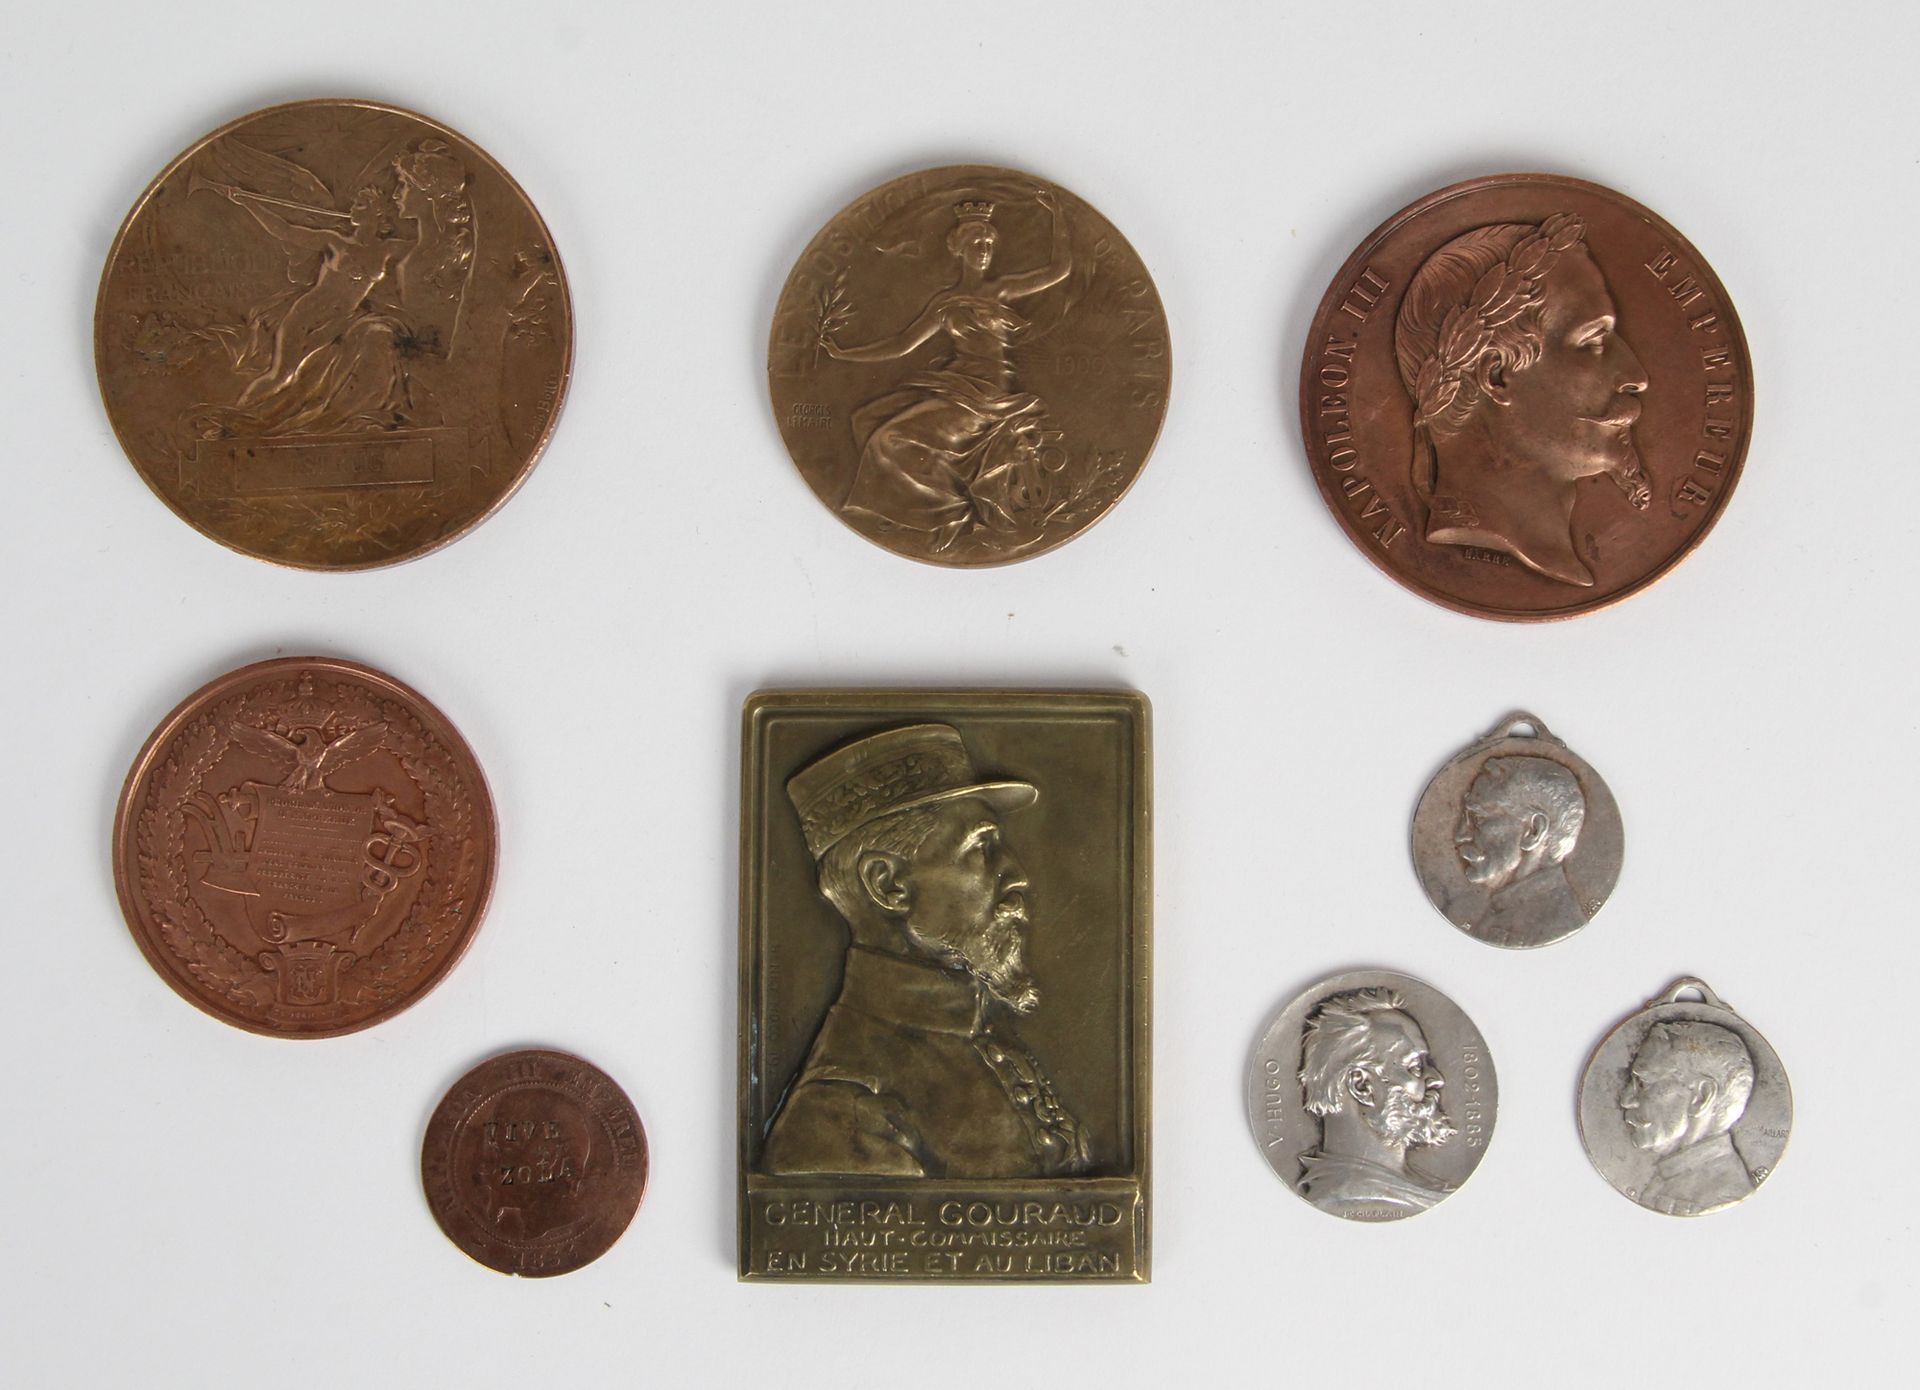 Null LOTE DE NUEVE MEDALLAS DE BRONCE

- Moneda de 10 céntimos de bronce de 1853&hellip;